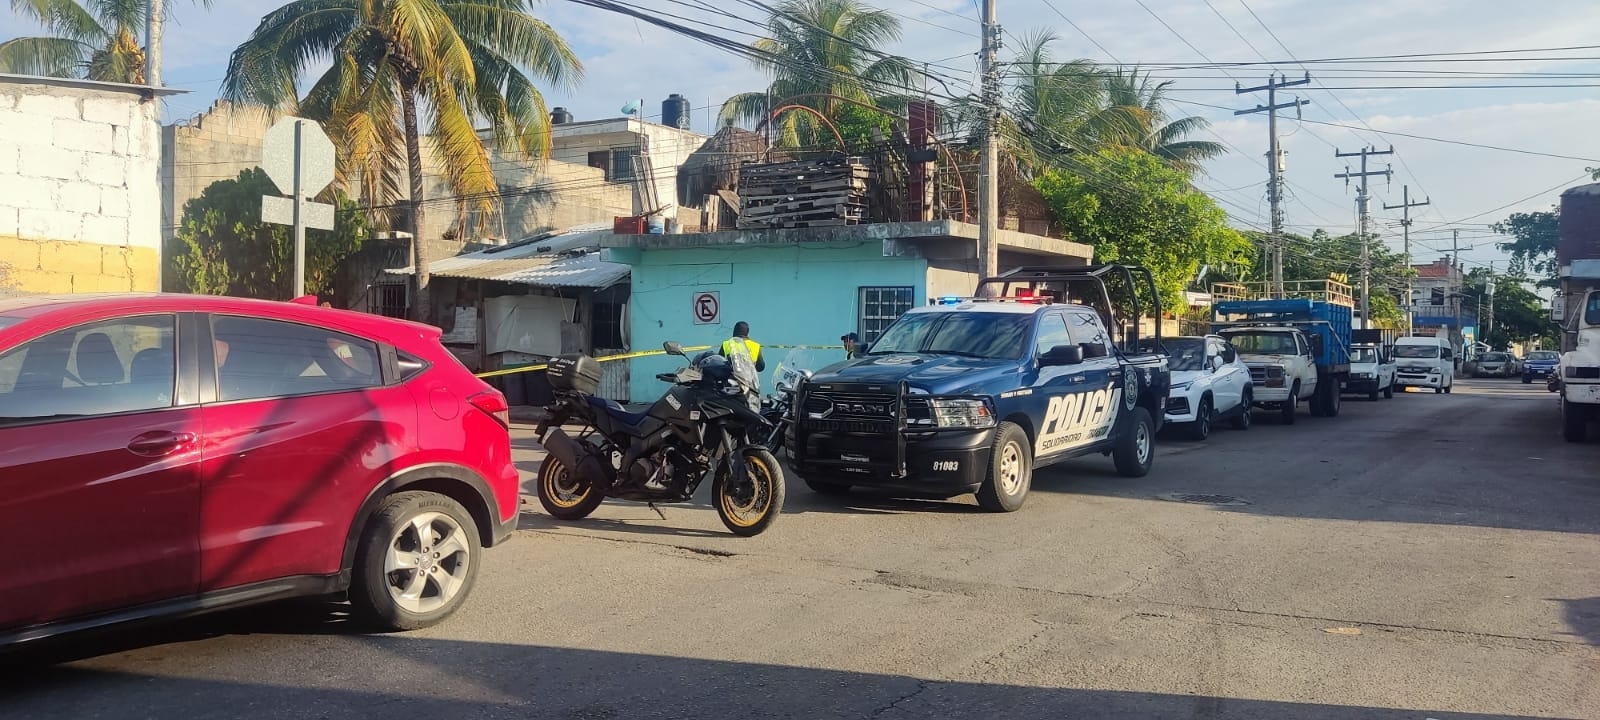 Una bomba fue reportada en la colonia Luis Donaldo Colosio de Playa del Carmen